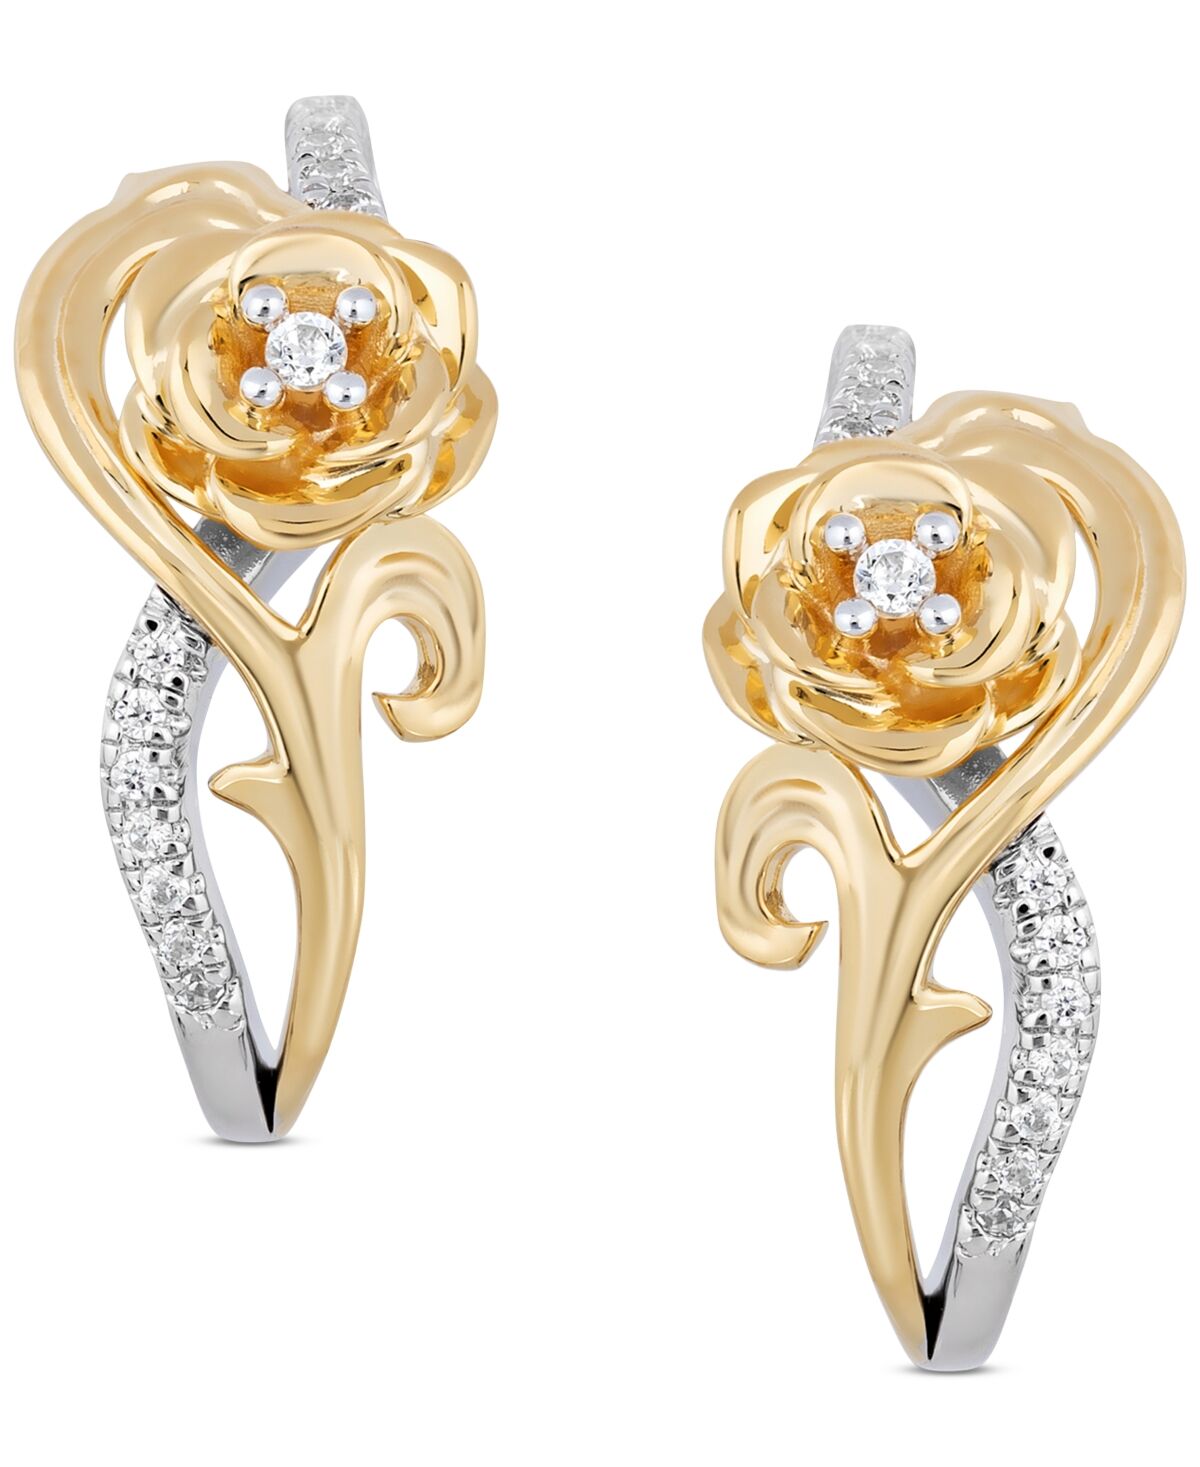 Disney Enchanted Disney Fine Jewelry Diamond Belle Rose Drop Earrings (1/10 ct. t.w.) in Sterling Silver & 10k Gold - Two-Tone